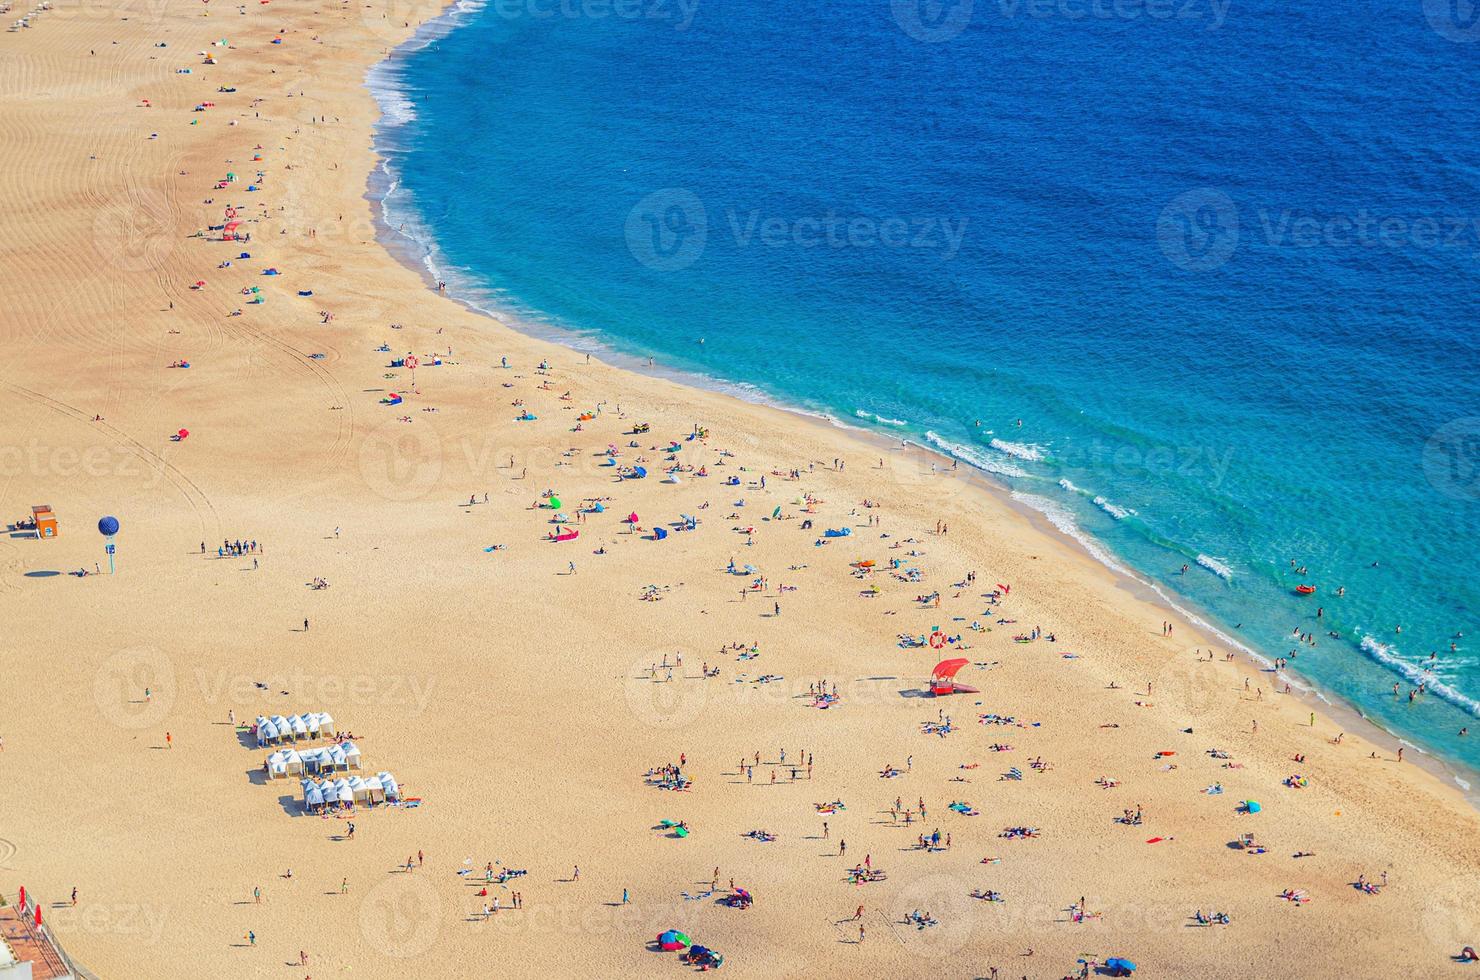 haut vue aérienne de la plage de sable avec des touristes prenant un bain de soleil et de l'eau turquoise azur de l'océan atlantique, praia da nazare photo